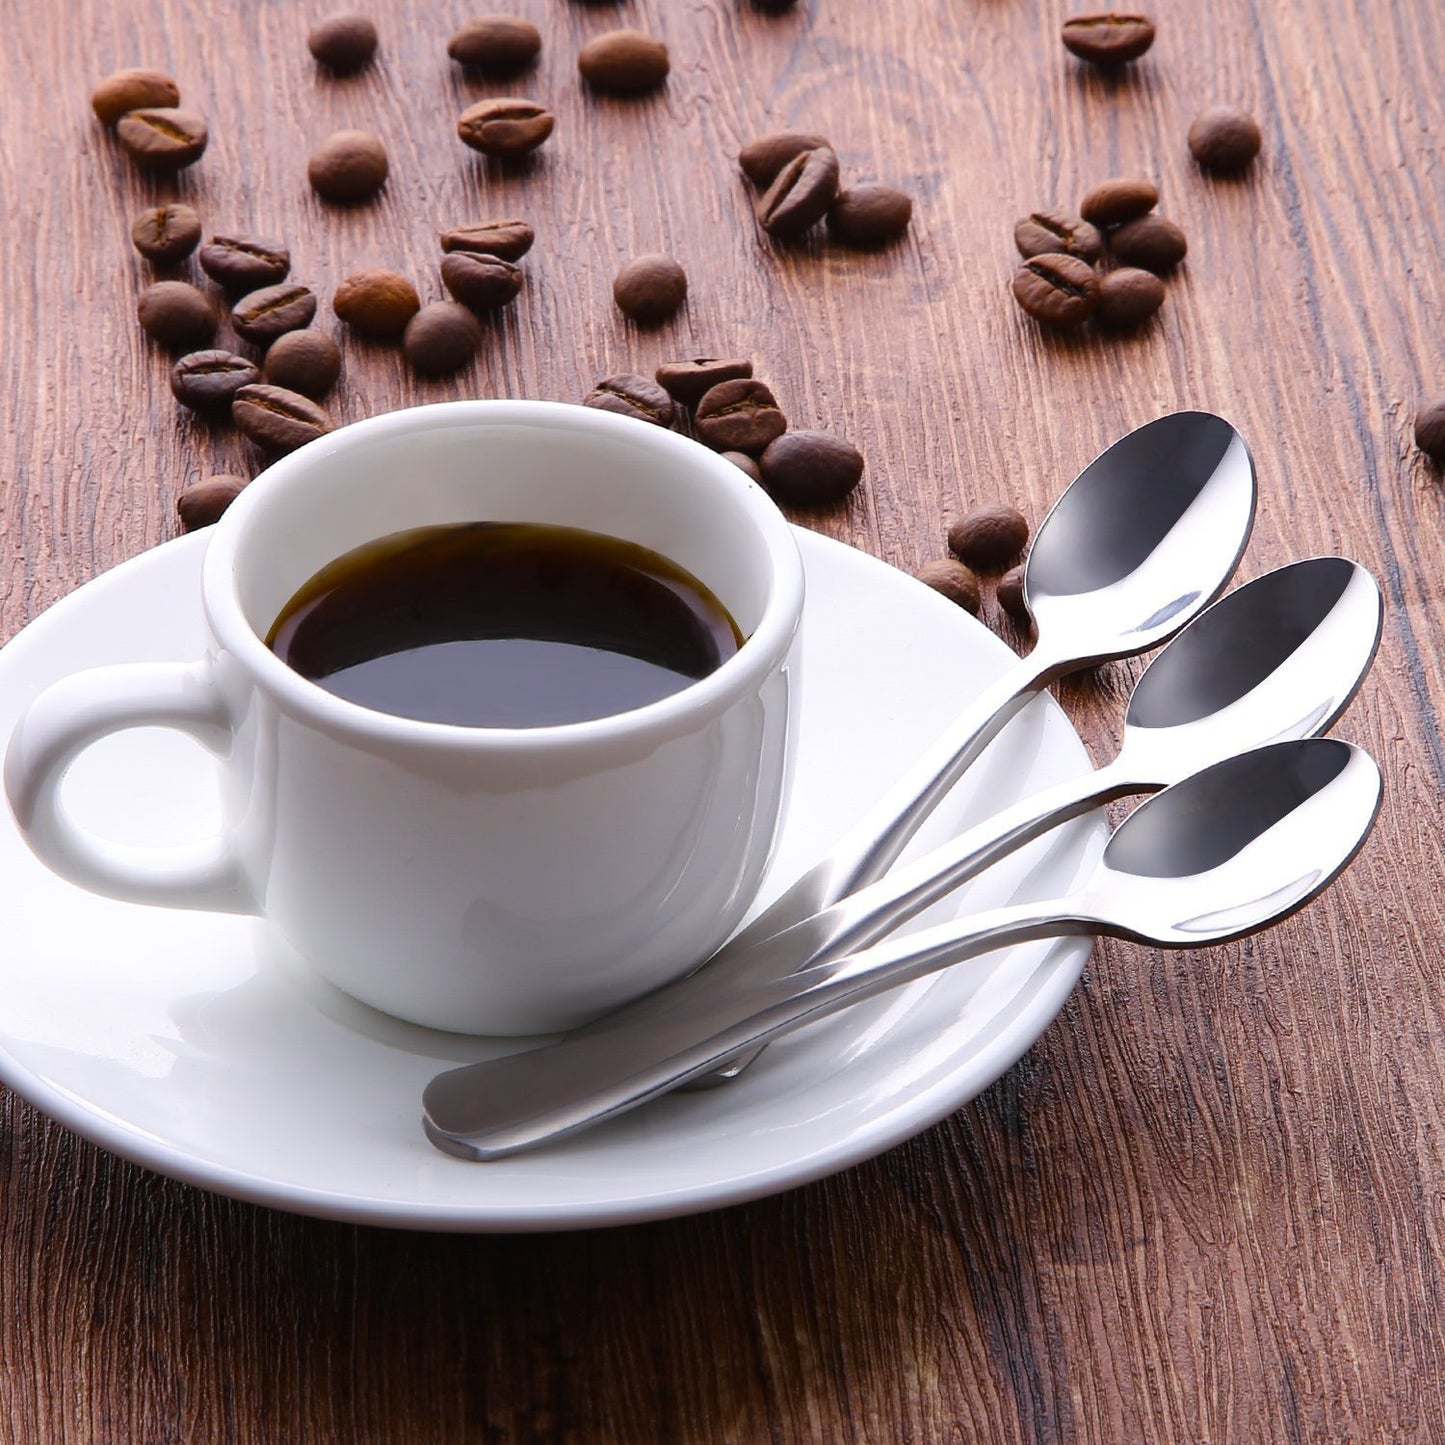 Demitasse Espresso Spoons